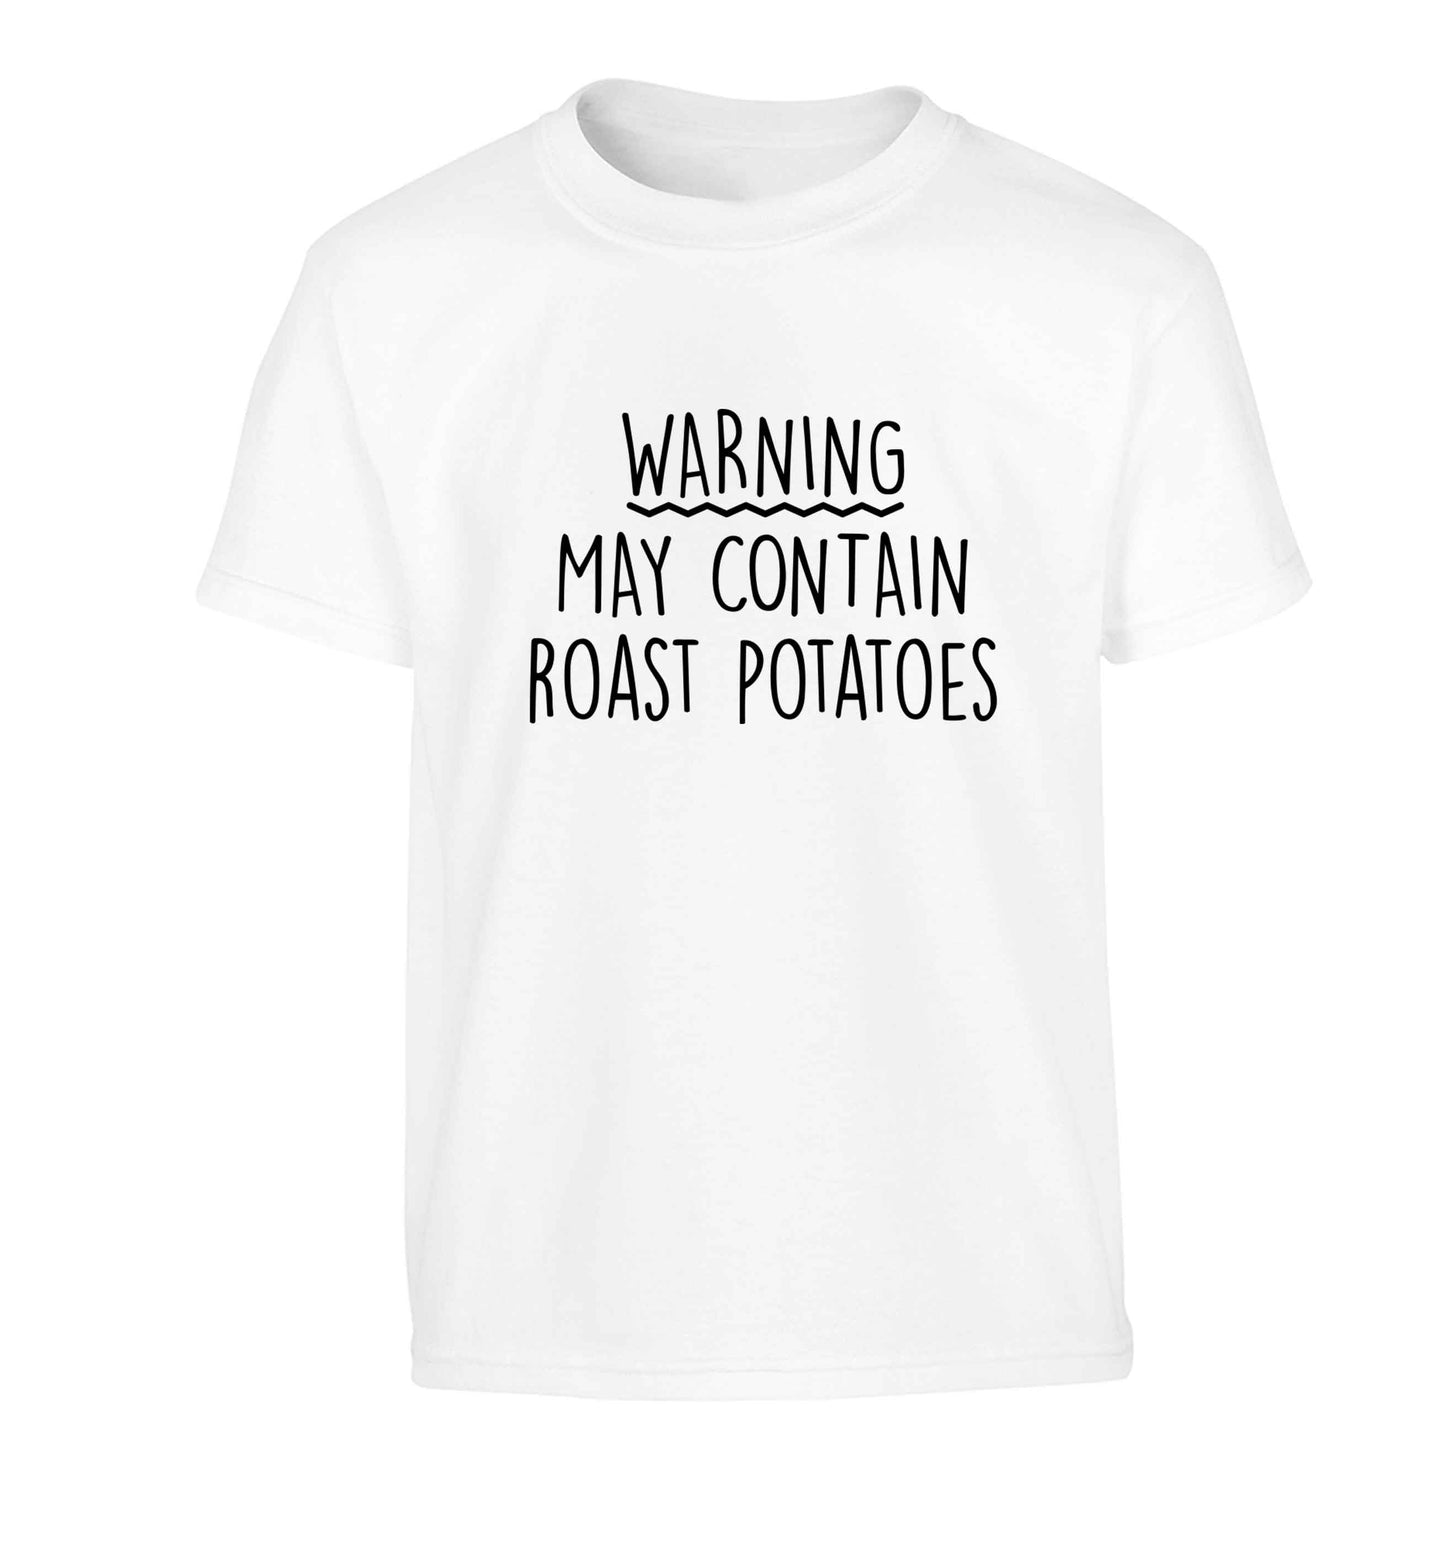 Warning may containg roast potatoes Children's white Tshirt 12-13 Years